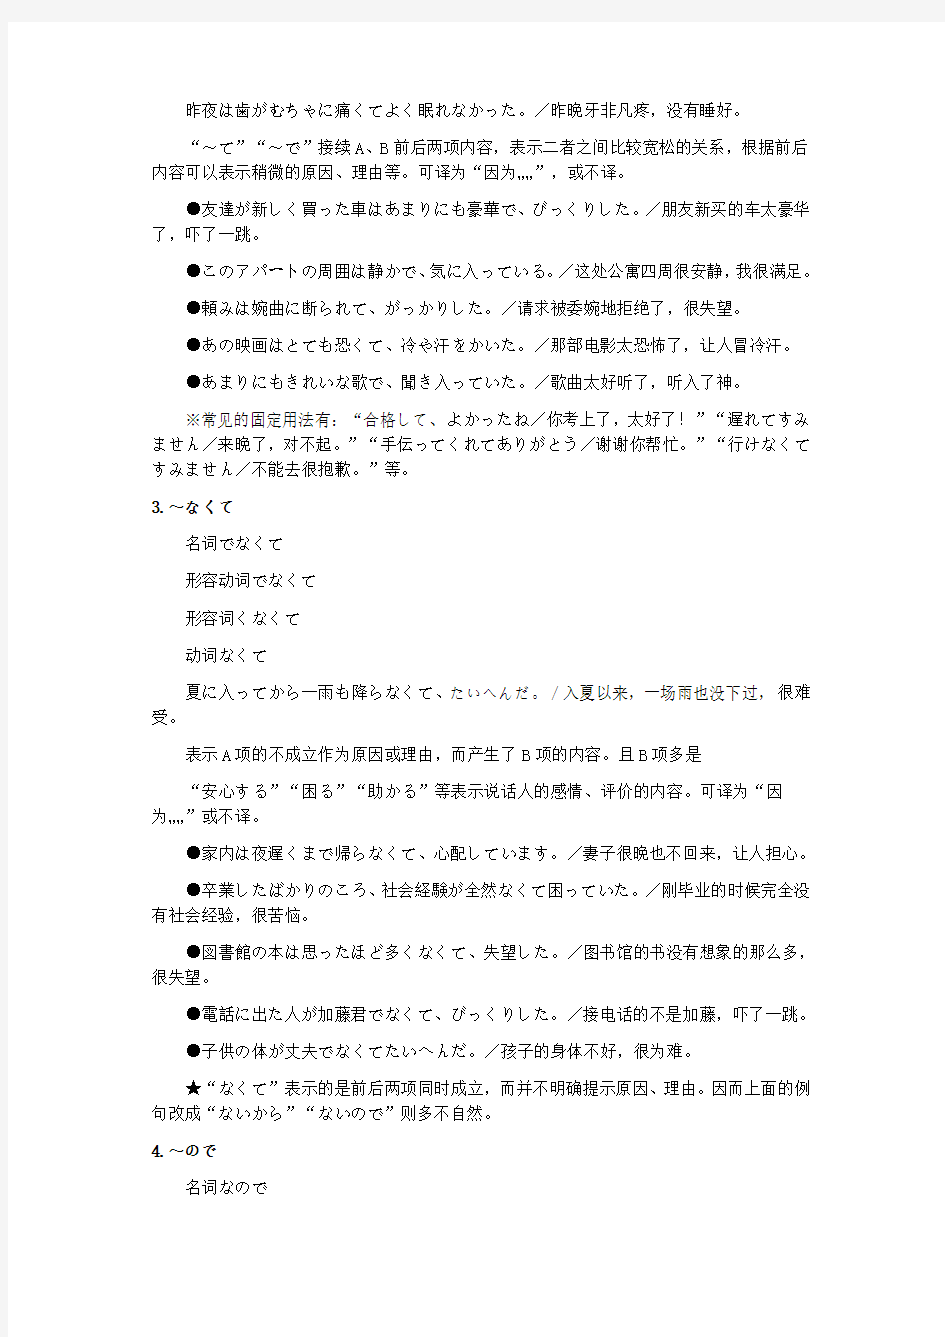 日语三级语法总结